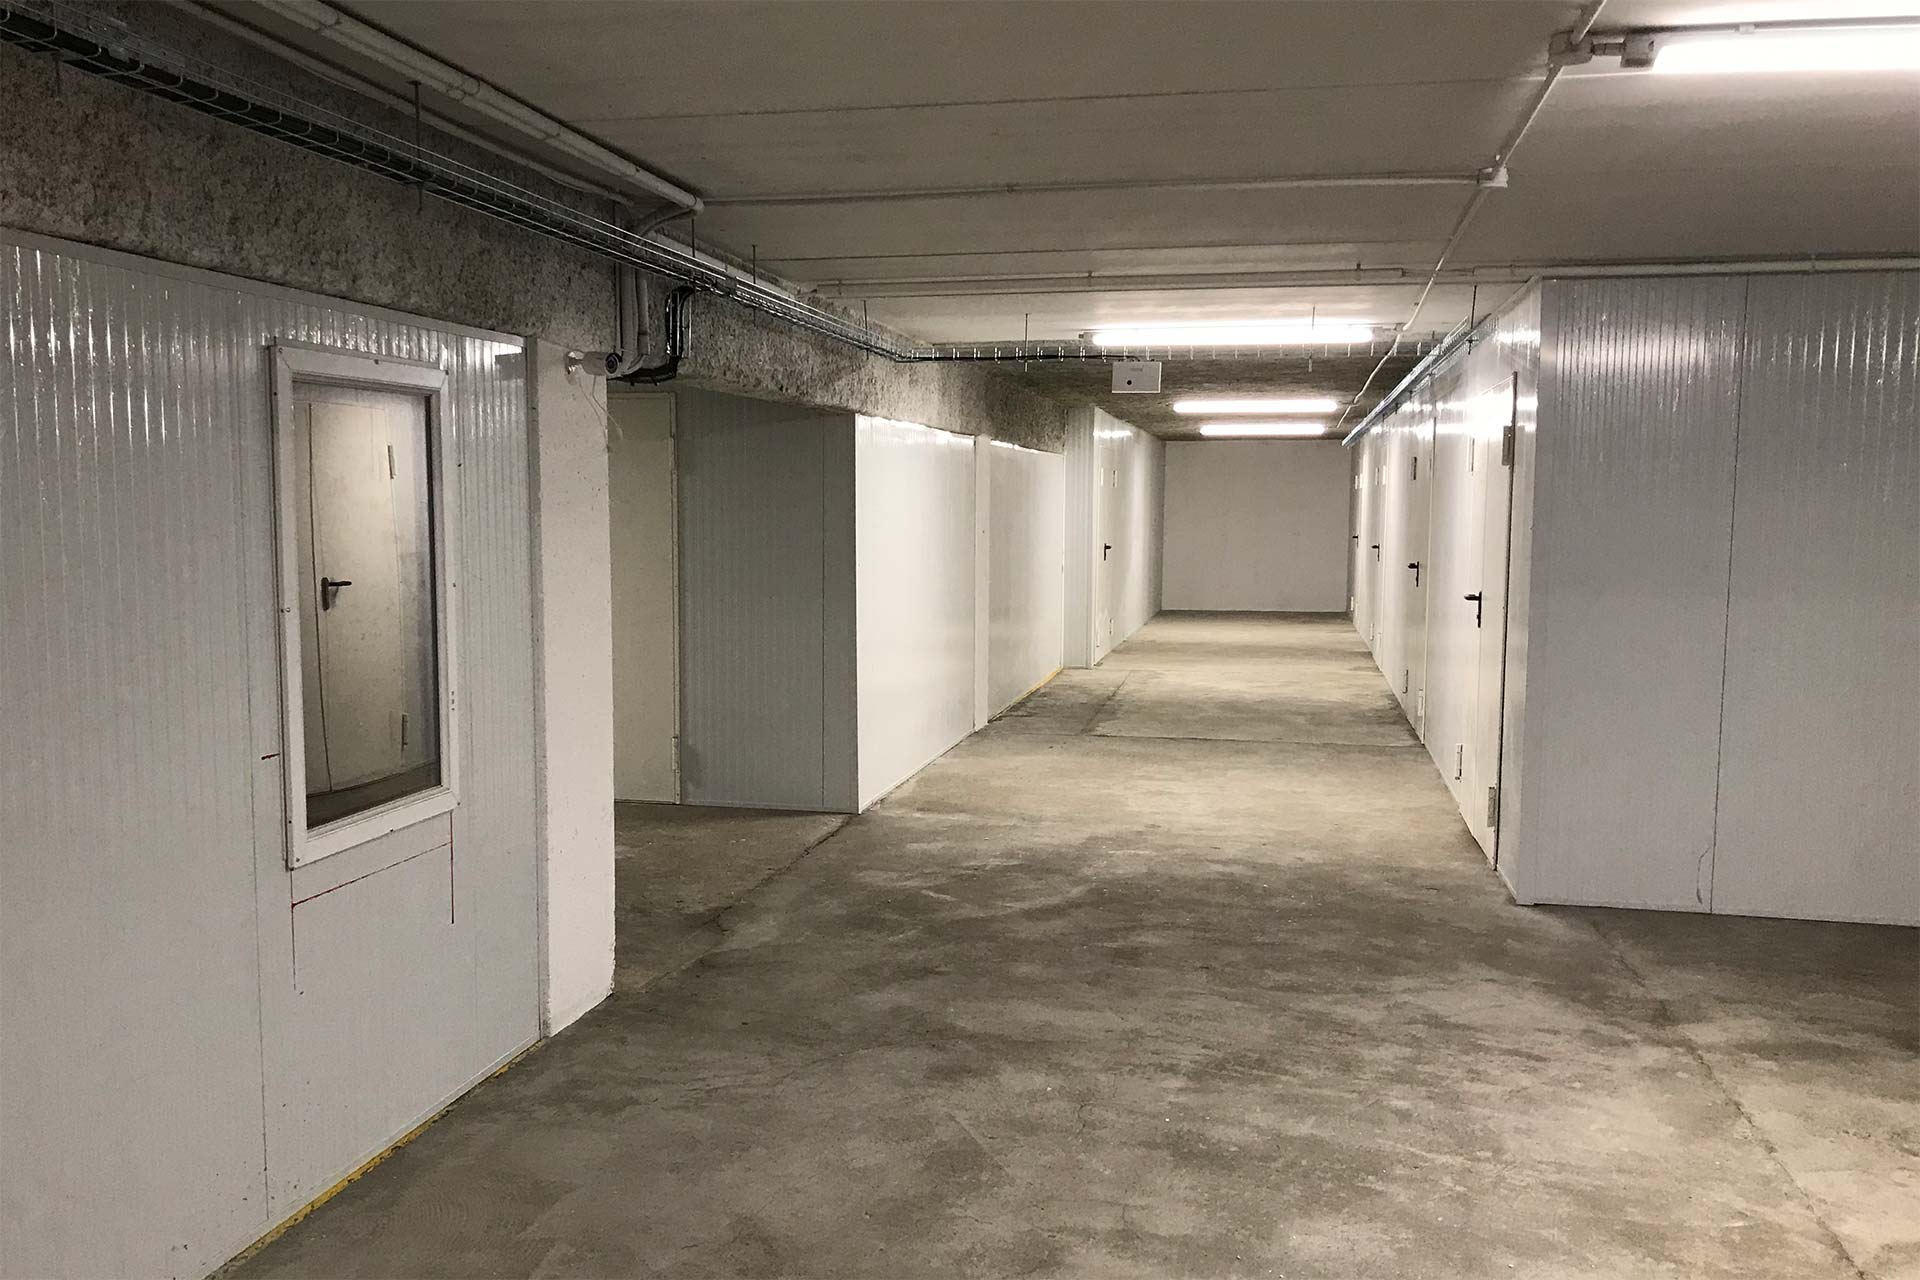 Site, en cours d’aménagement, de la ferme urbaine souterraine Cycloponics installée dans un parking du quartier Langlet-Santy, dans le 8e arrondissement de Lyon